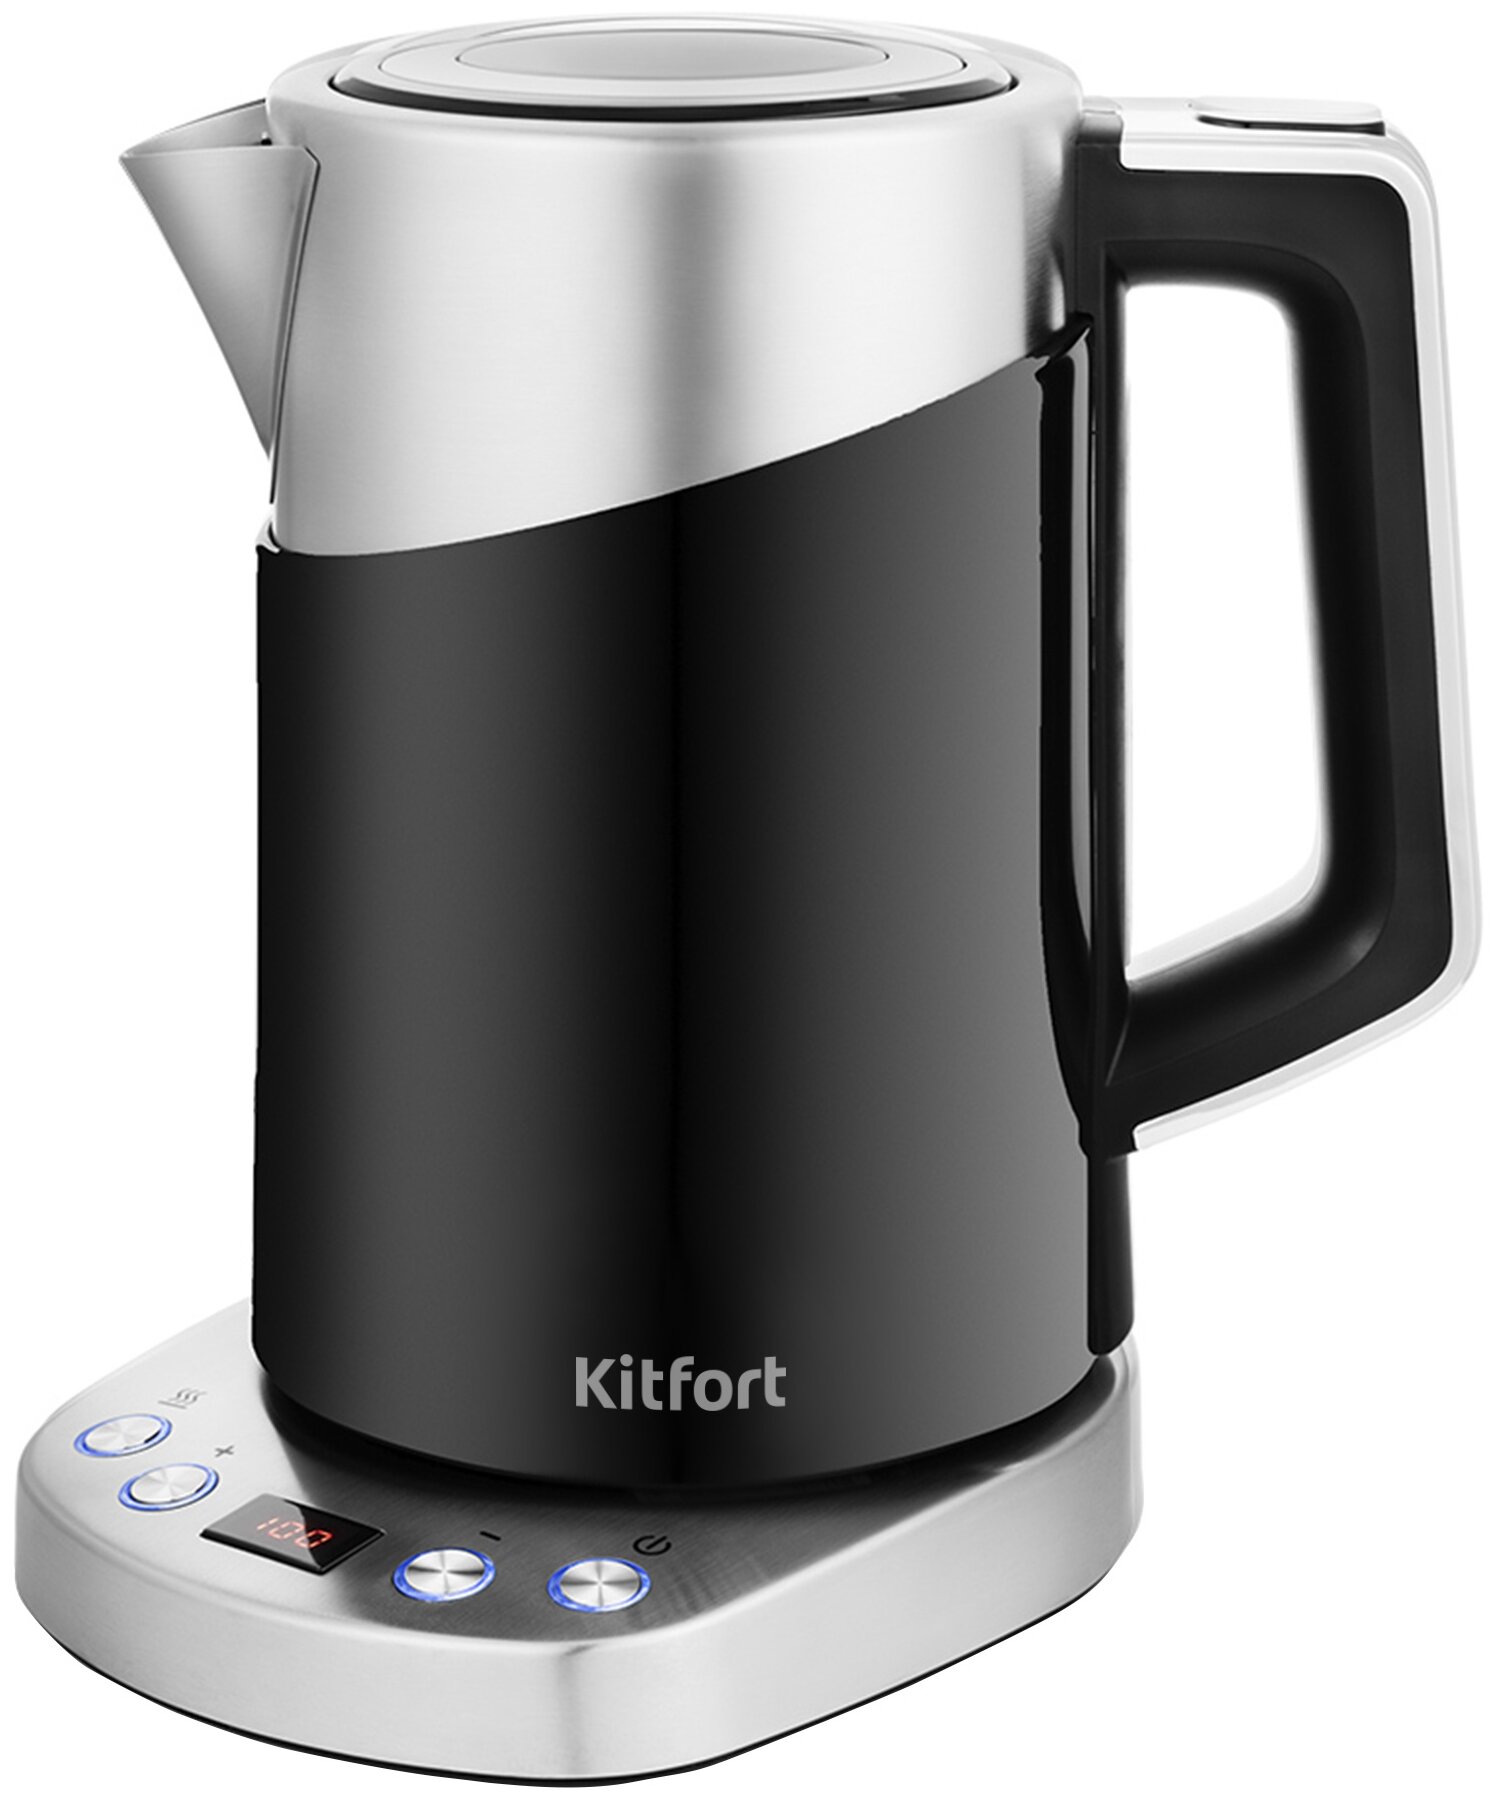 Чайник электрический Kitfort КТ-658 - купить чайник электрический КТ-658 по выгодной цене в интернет-магазине